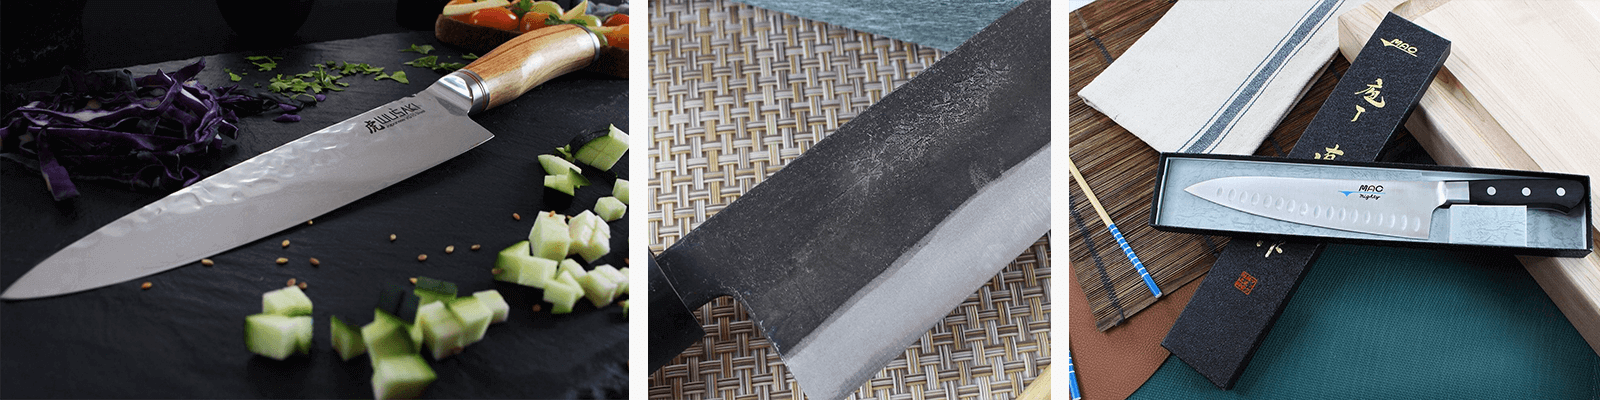 Couteau Legume & Couteau Fruit: Couteau de Cuisine Eminceur